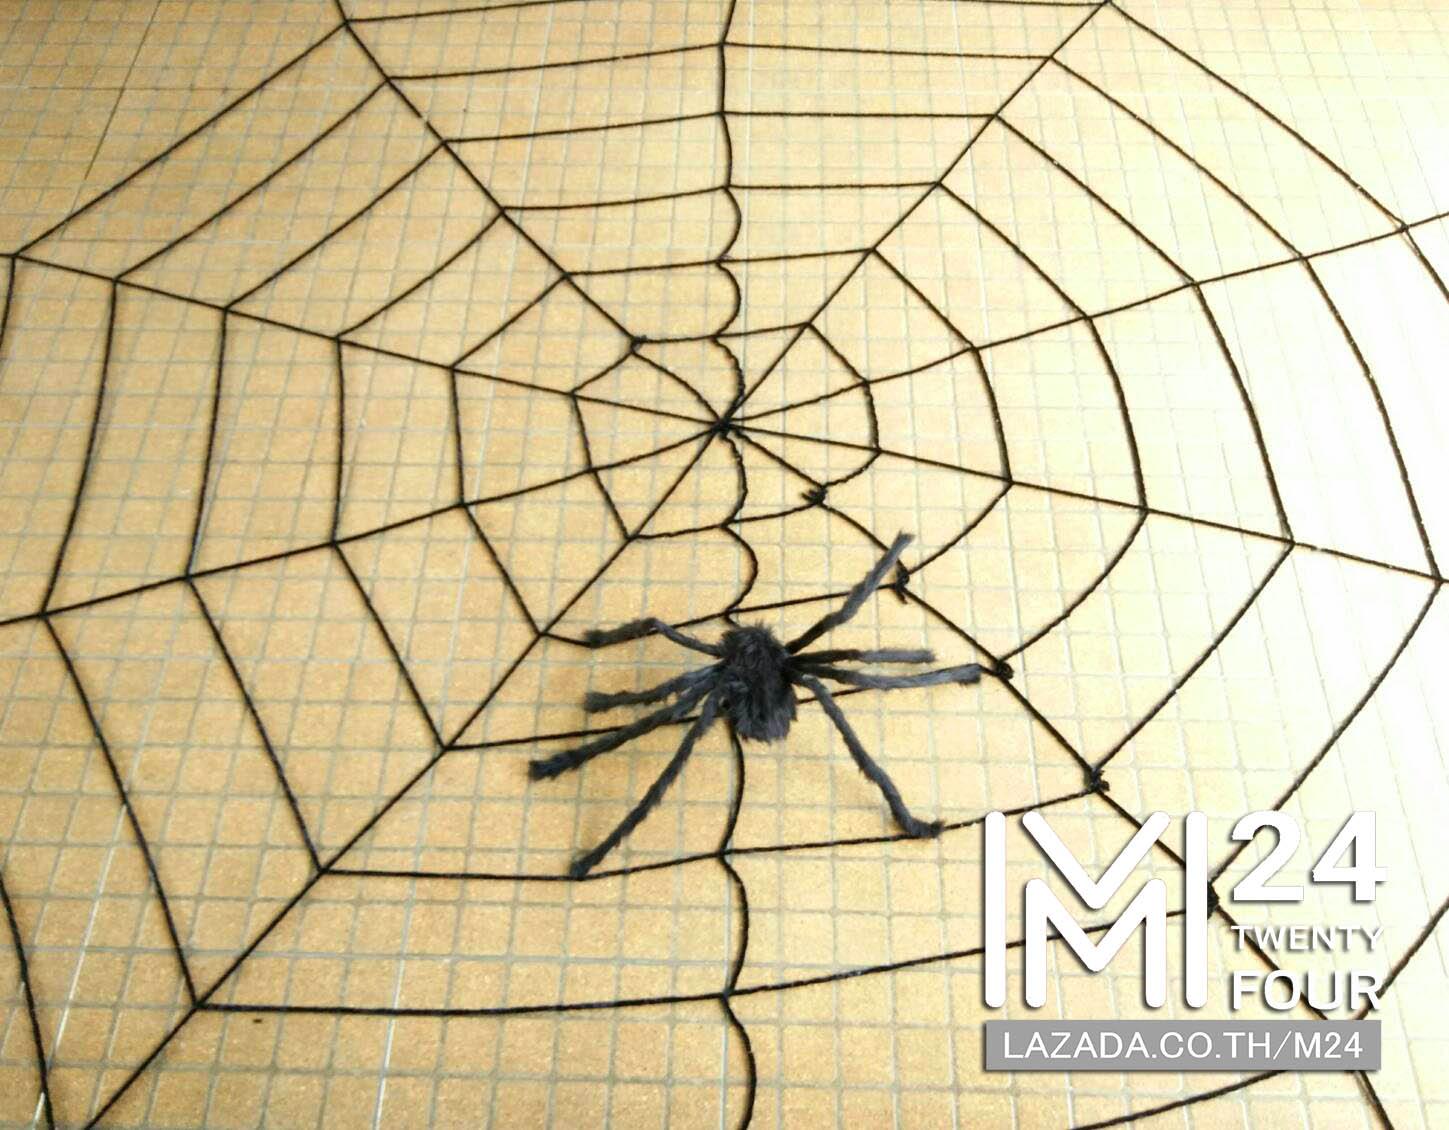 1 เซ็ต 2 ชิ้น ใยแมงมุมยักษ์ สีดำ  ขนาด 3x3 เมตร 1 ชิ้น + แมงมุมยักษ์ สีดำ 1 ตัว แมงมุมปลอม แมงมุม ยักษ์ ตัวใหญ่ ของปลอม ของเล่น ตัวตลก ของเล่นแกล้งคน อุปกรณ์ตกแต่ง ฮาโลวีน black widow giant spider web party happy halloween